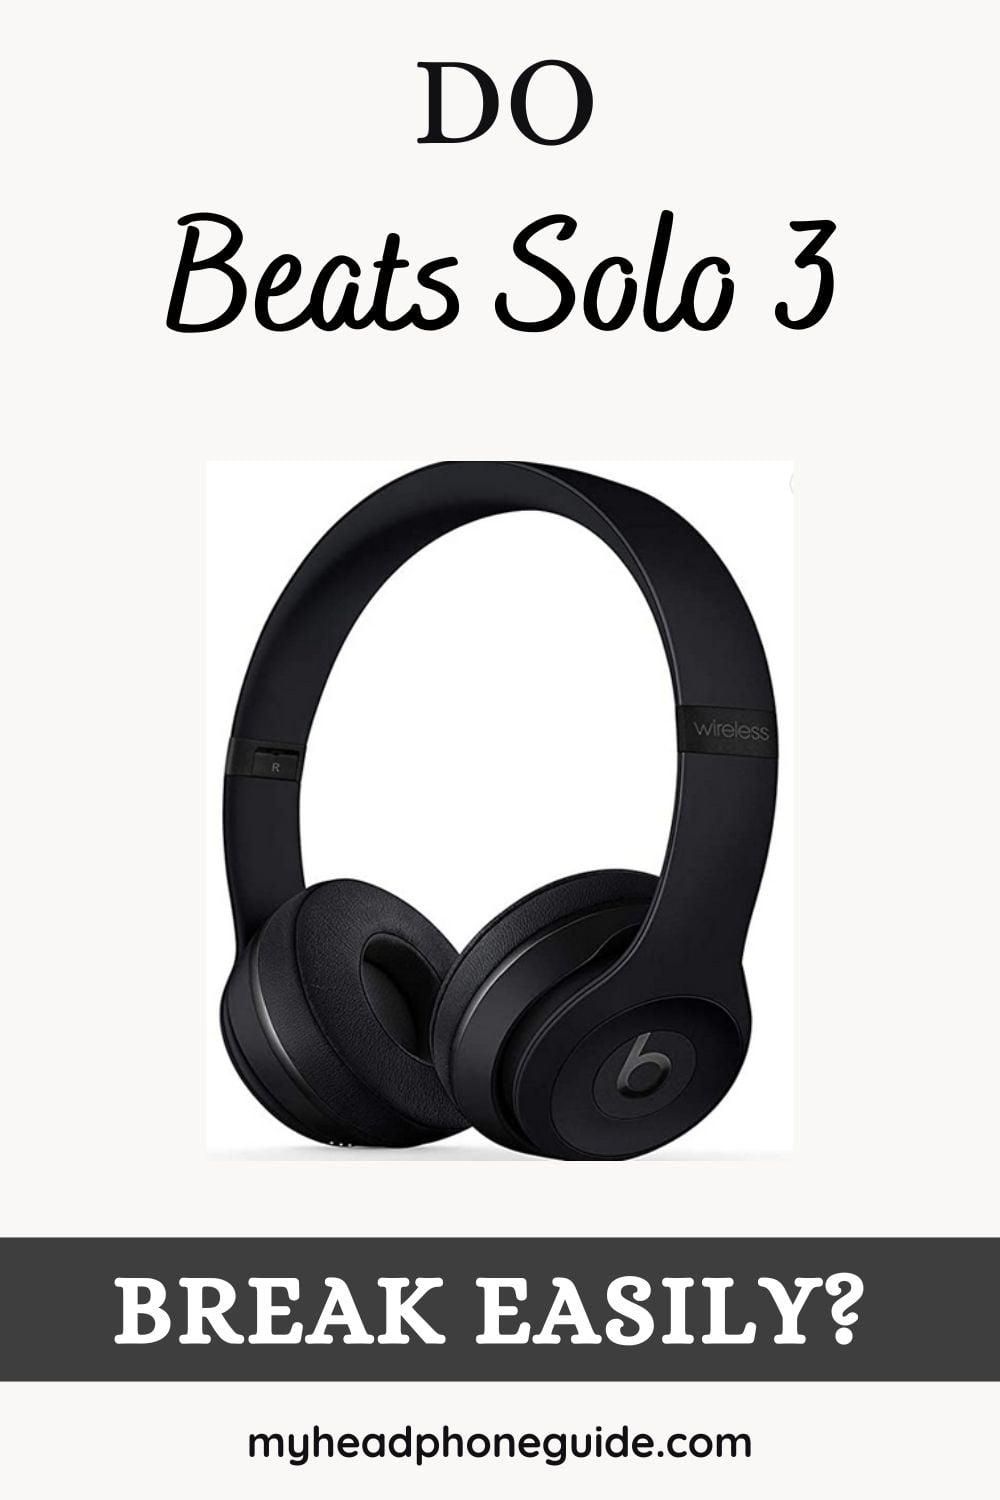 Do Beats Solo 3 Breaks Easily